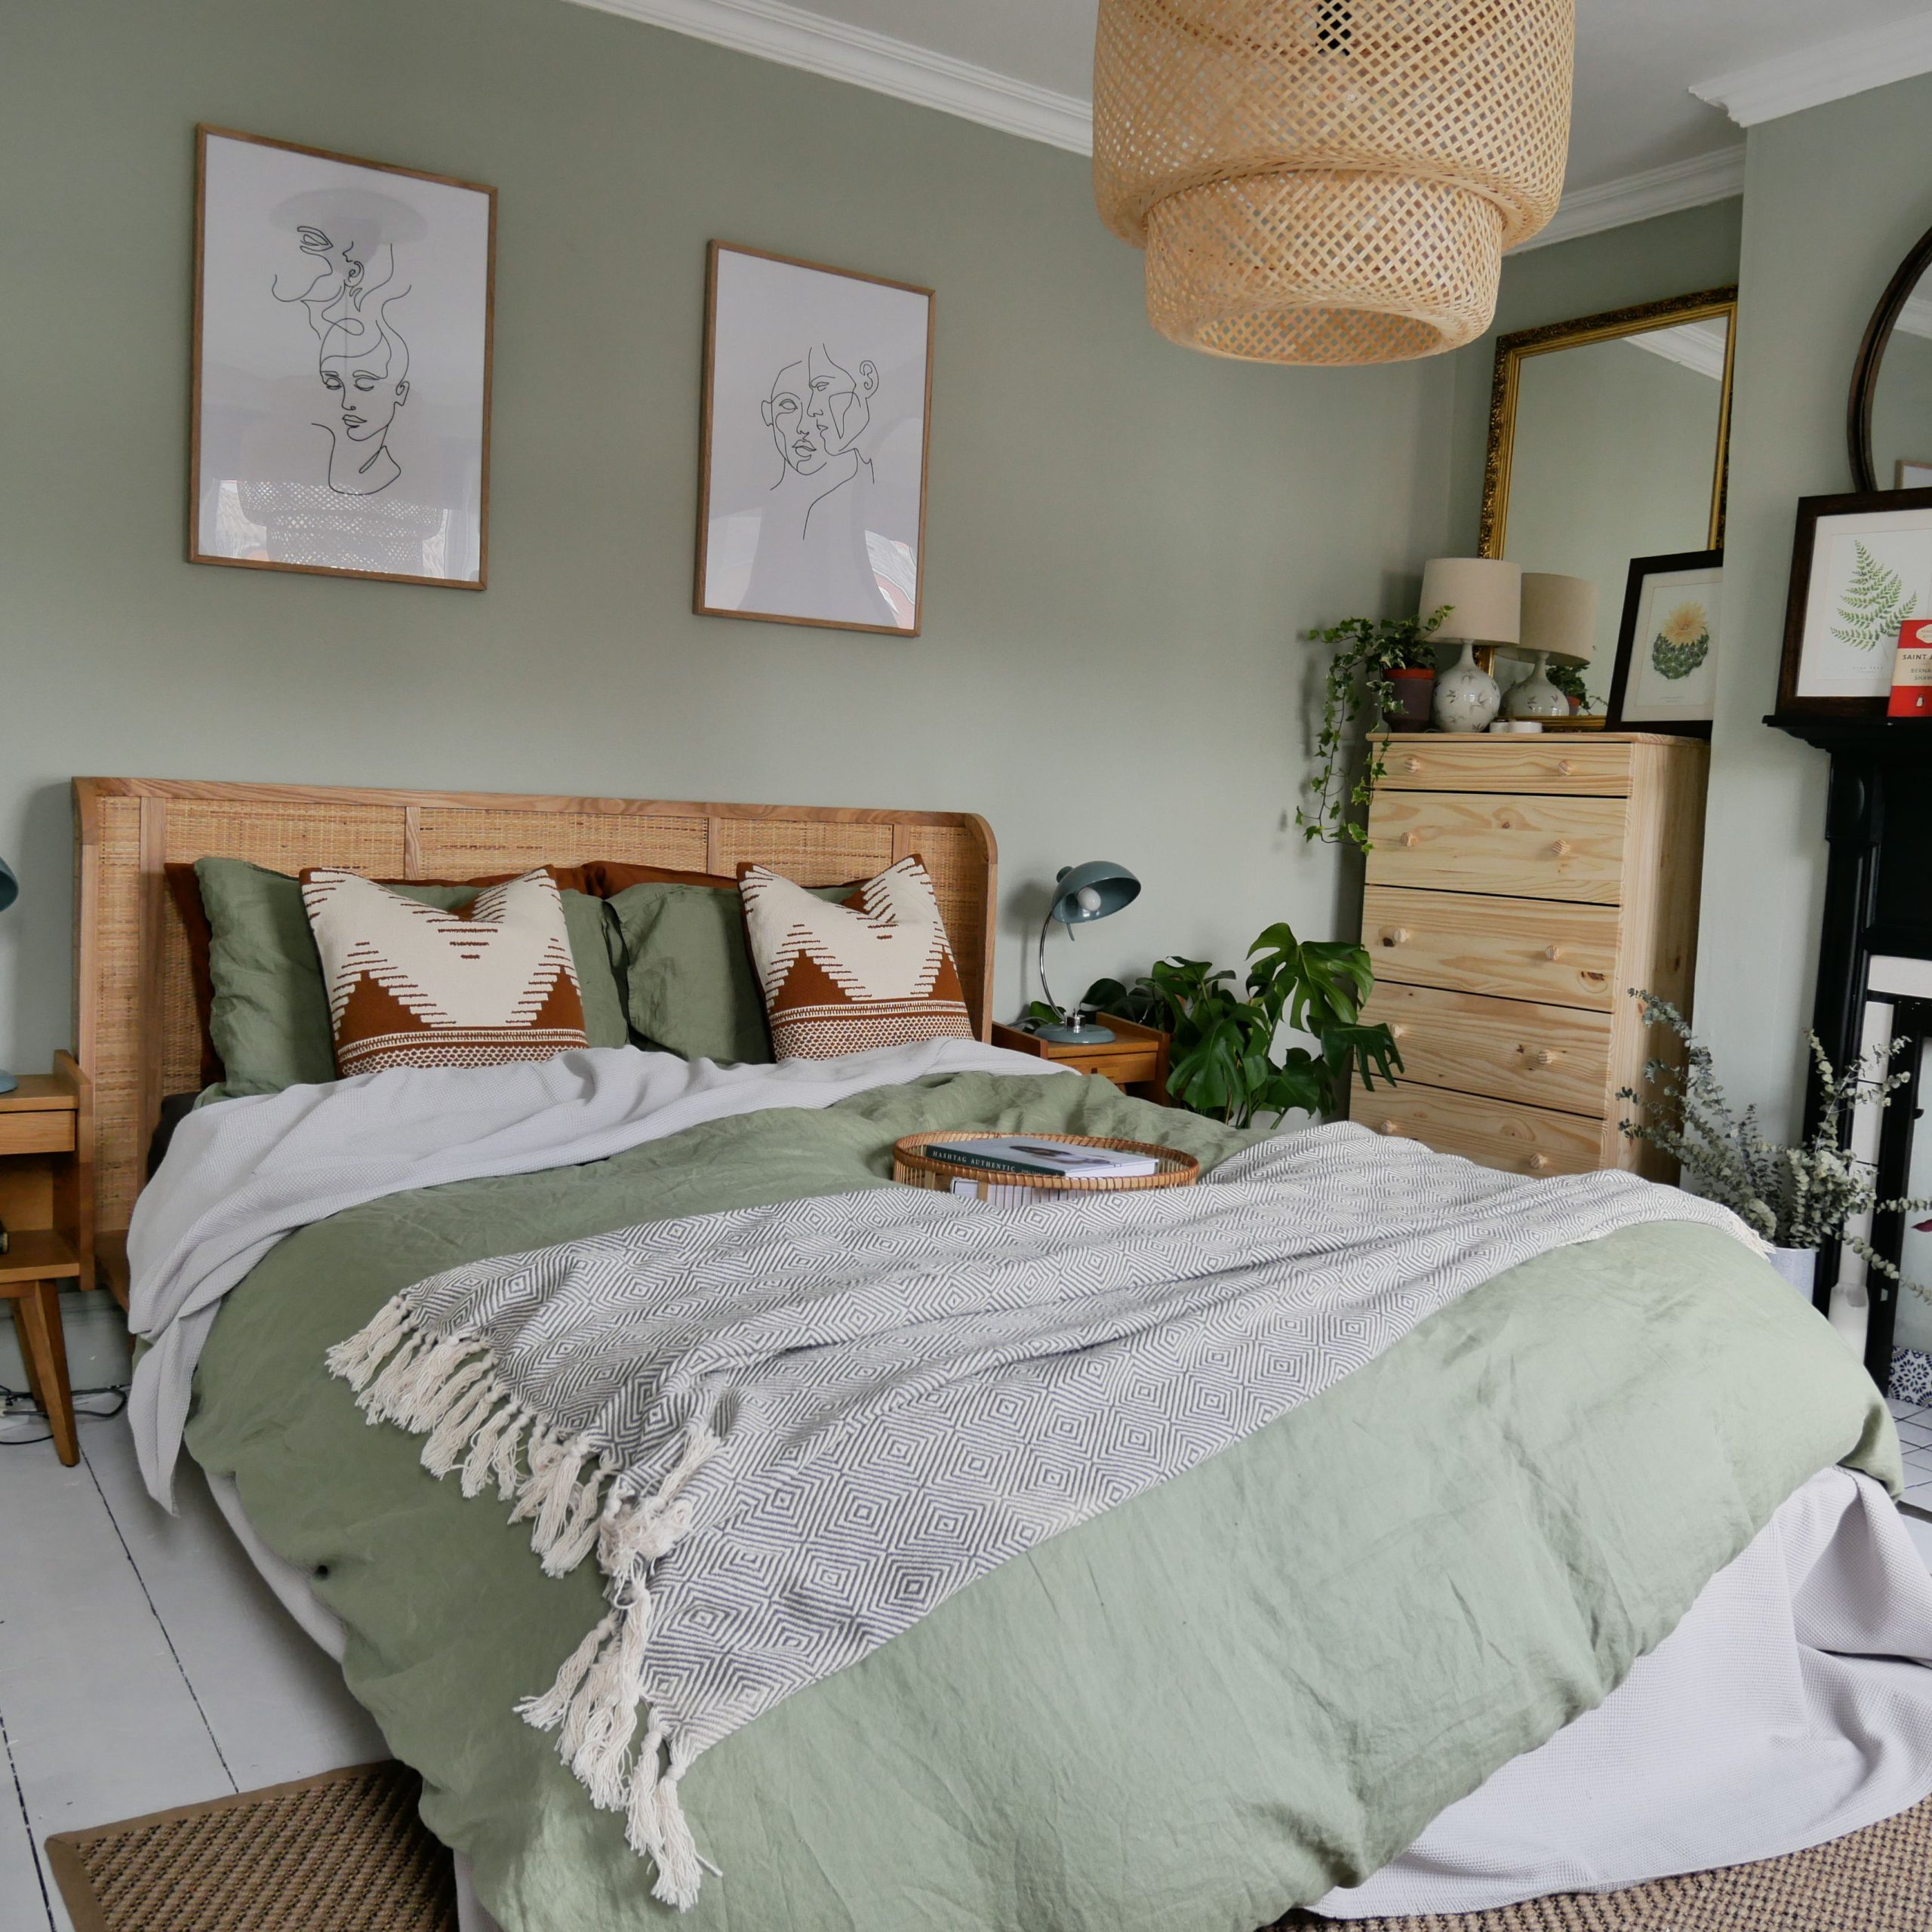 Lợi ích của việc thiết kế phòng ngủ màu xanh lá cây